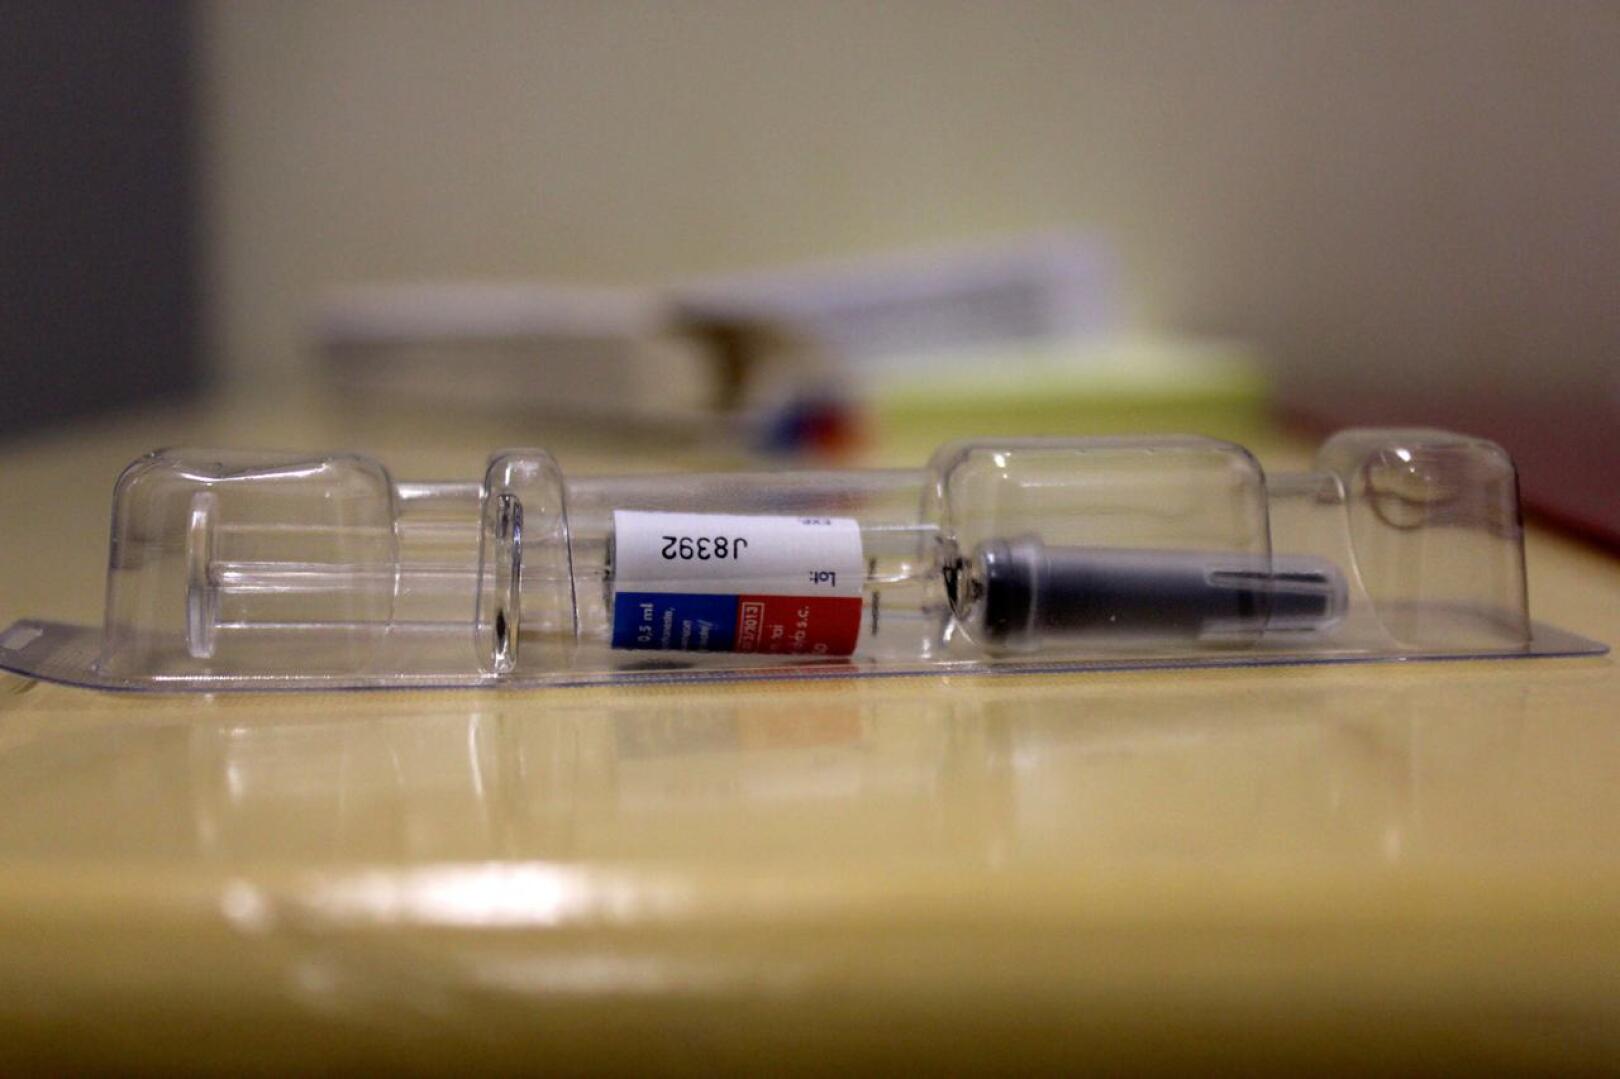 Rokotteita toivotaan saatavan lisää ensi viikon lauantain rokotuspäivään, 21.11.